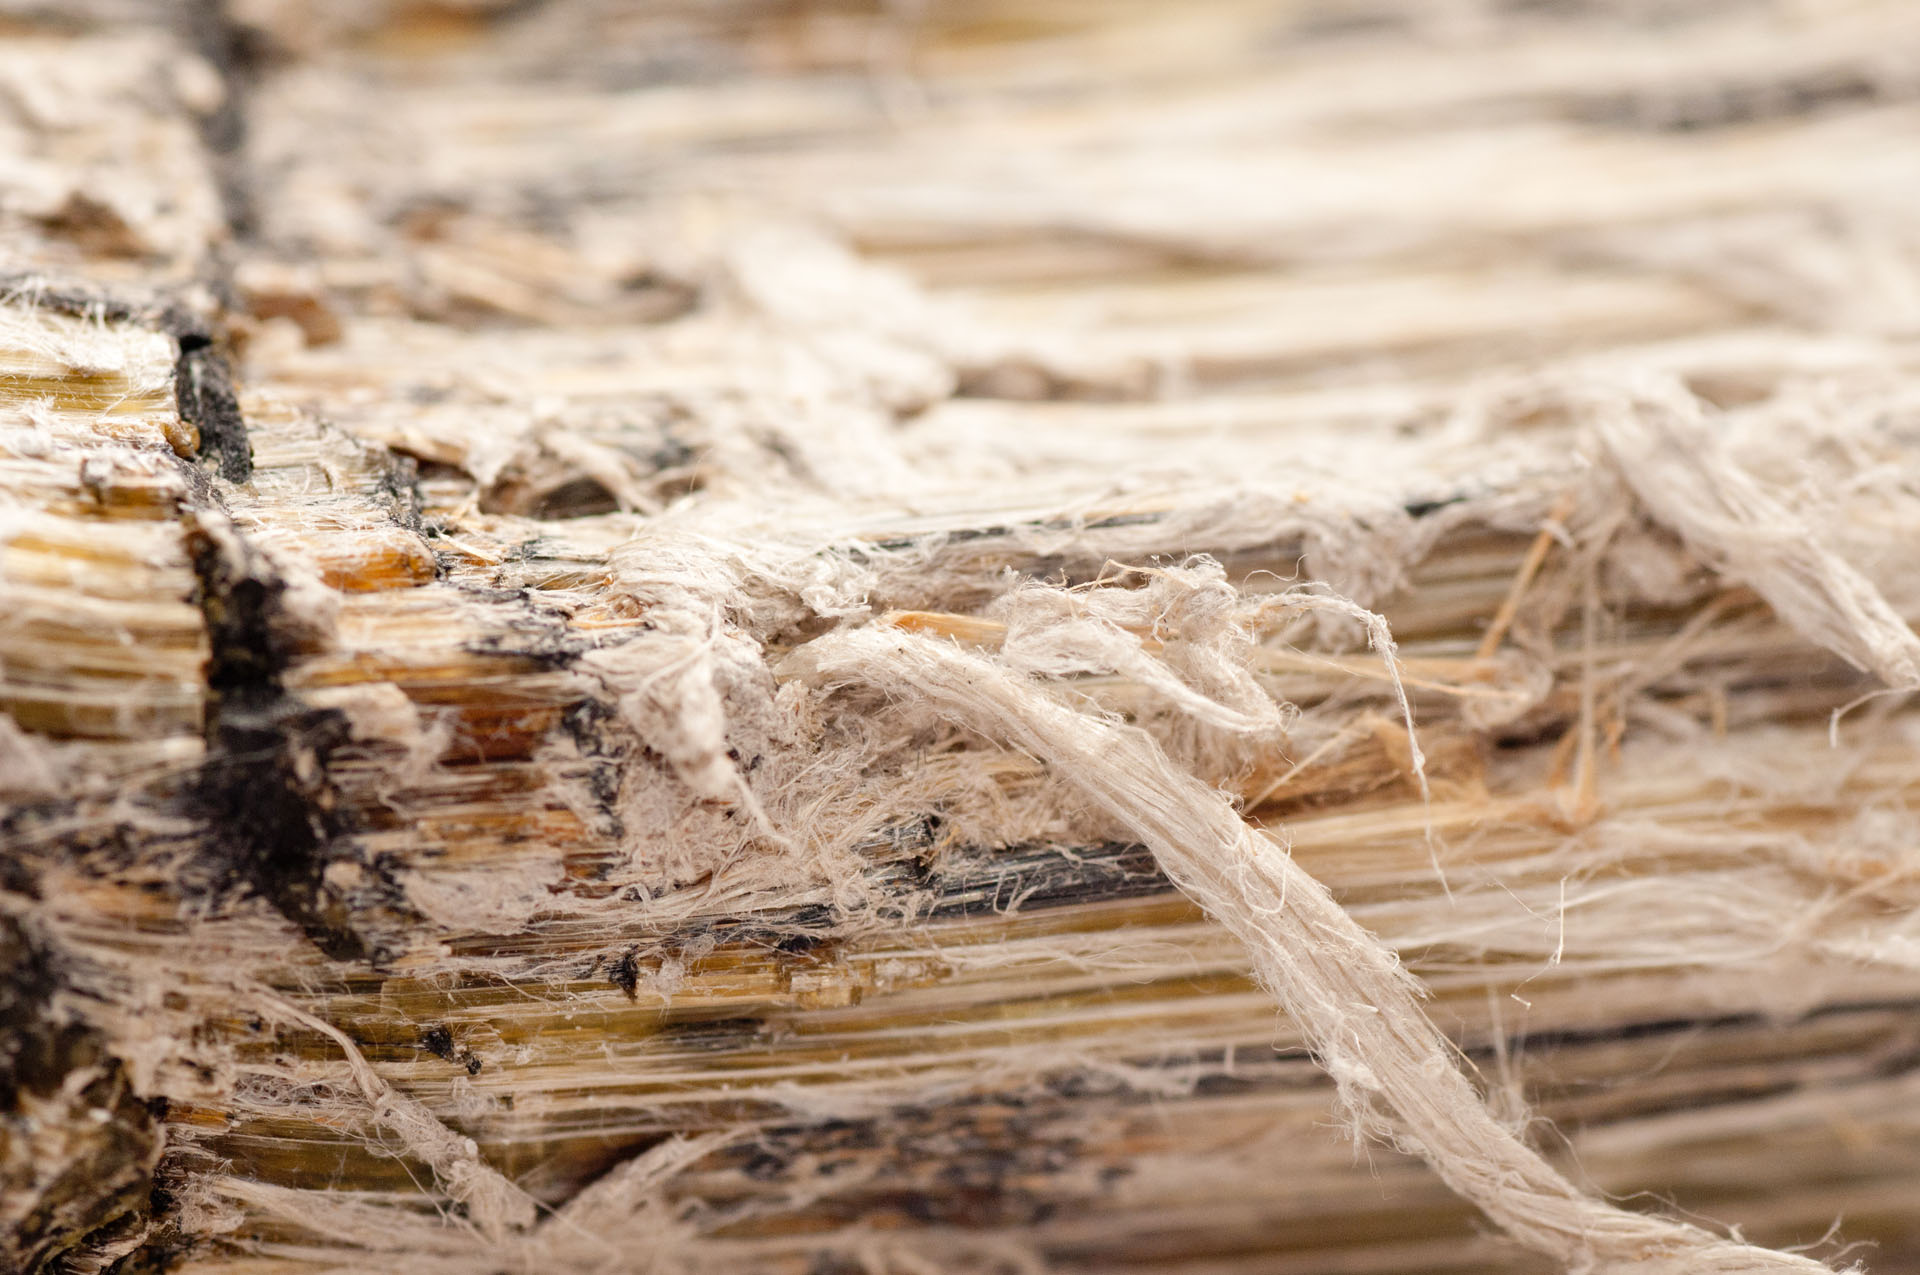 asbestos, serpentine fibers